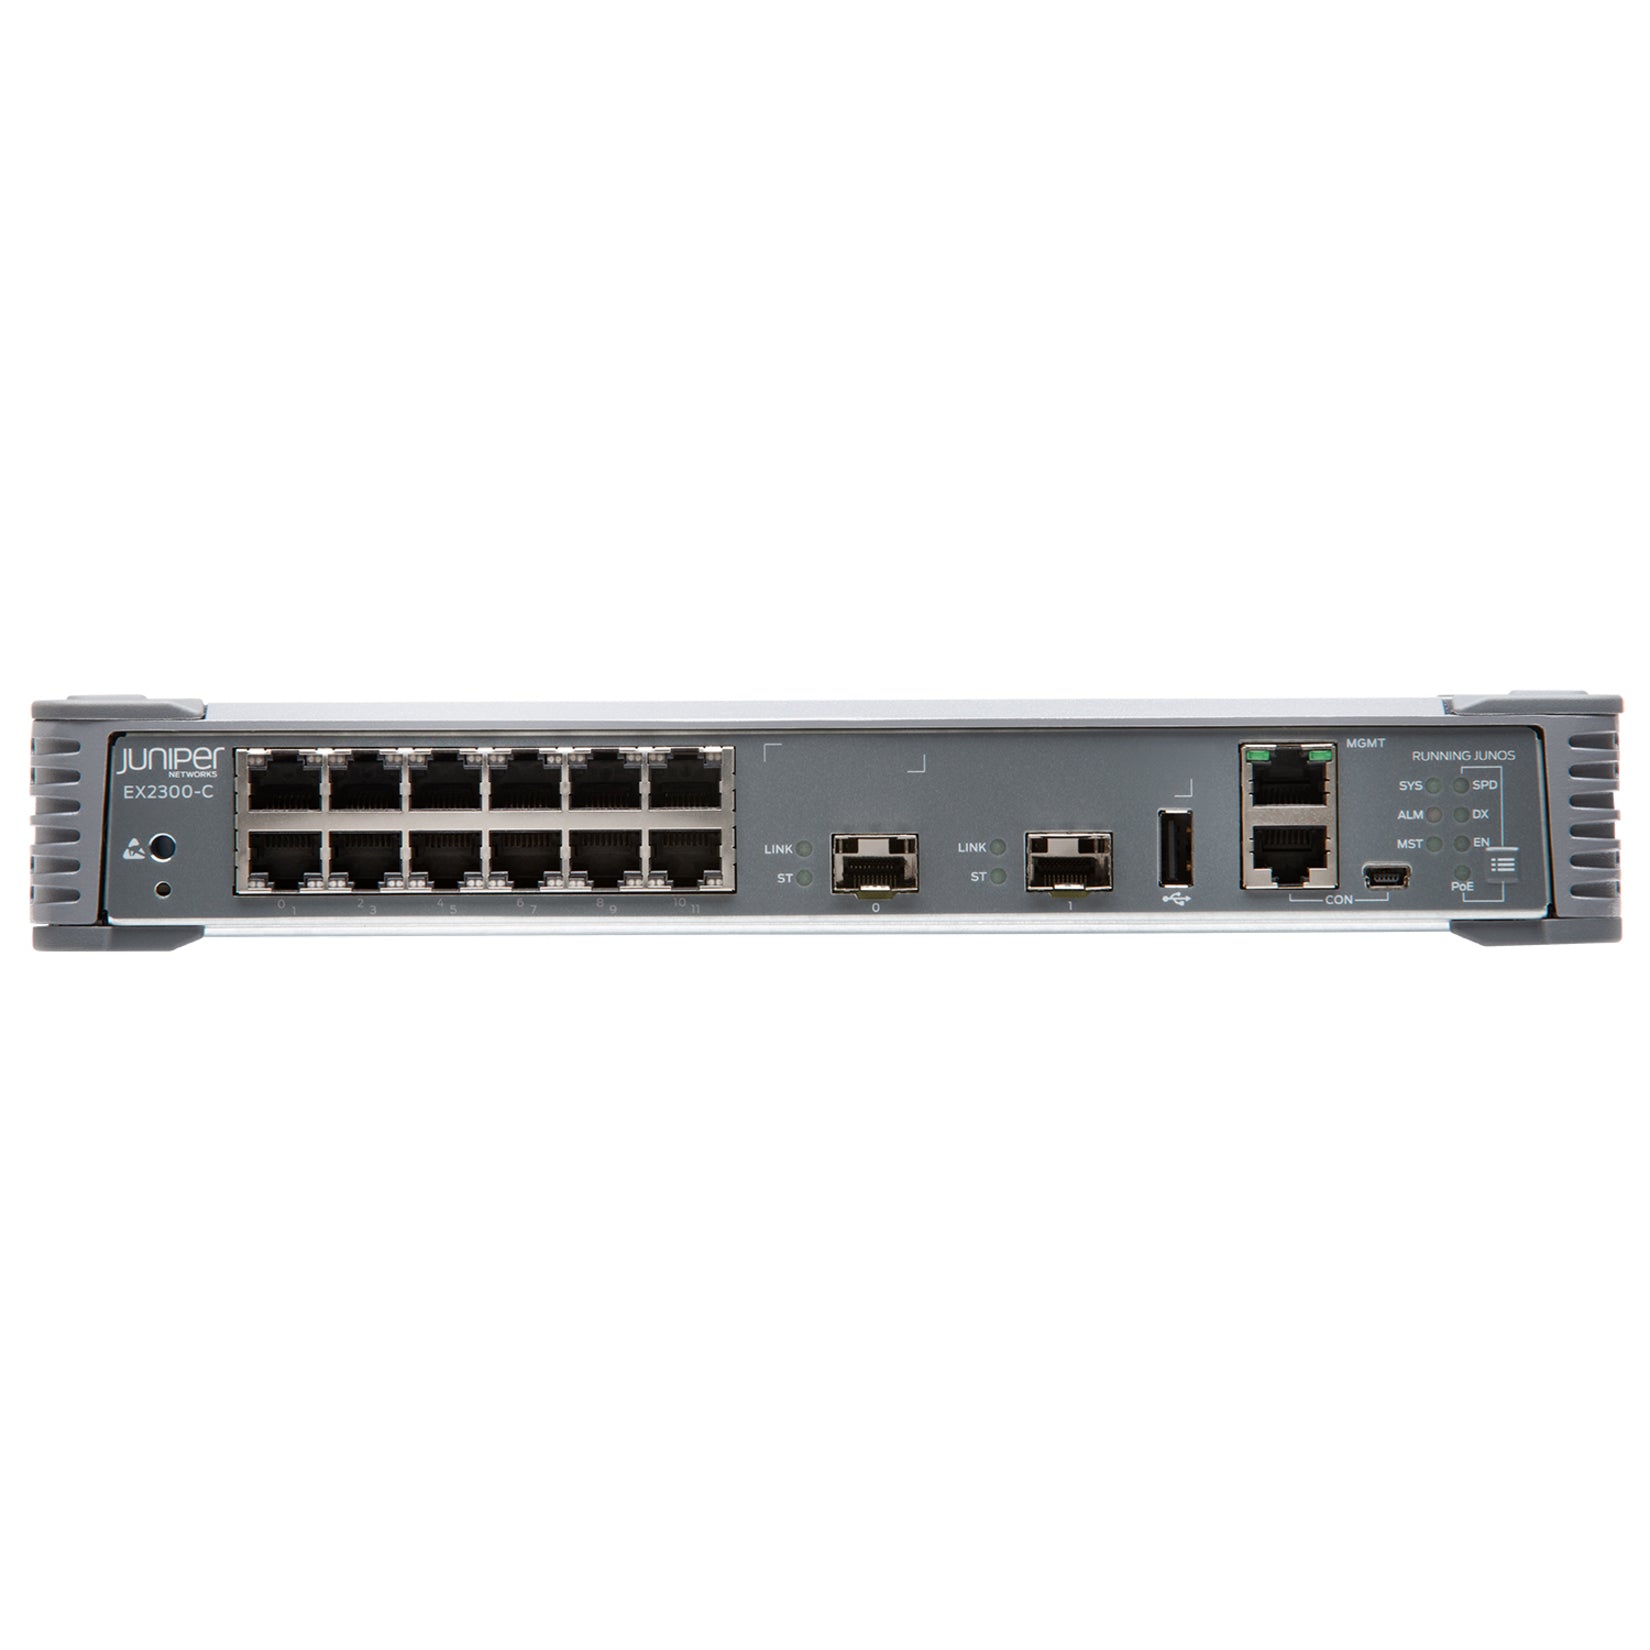 Juniper EX2300-C Compact Ethernet Switch (EX2300-C-12T)